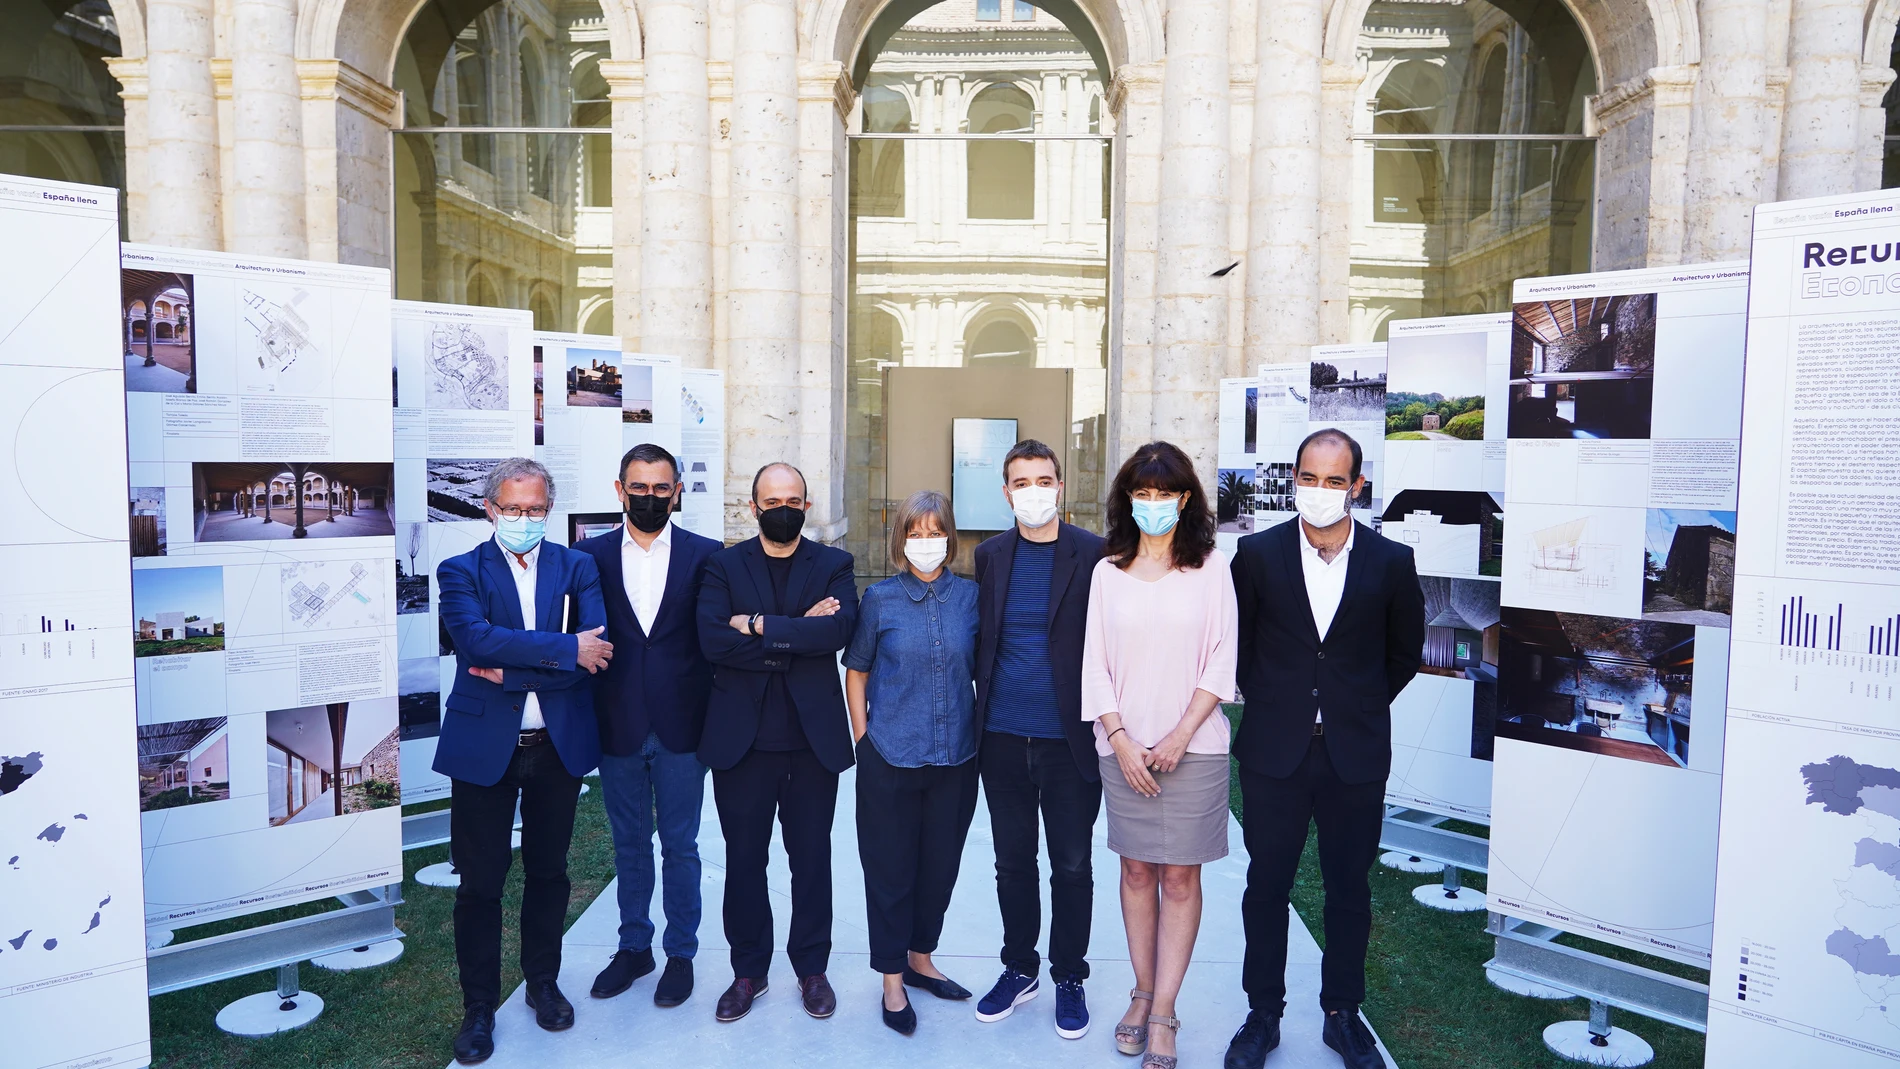 El concejal de Planeamiento Urbanístico y Vivienda, Manuel Saravia, y la concejala de Cultura y Turismo, Ana Redondo, presentaron la XV edición de la Bienal de Arquitectura.